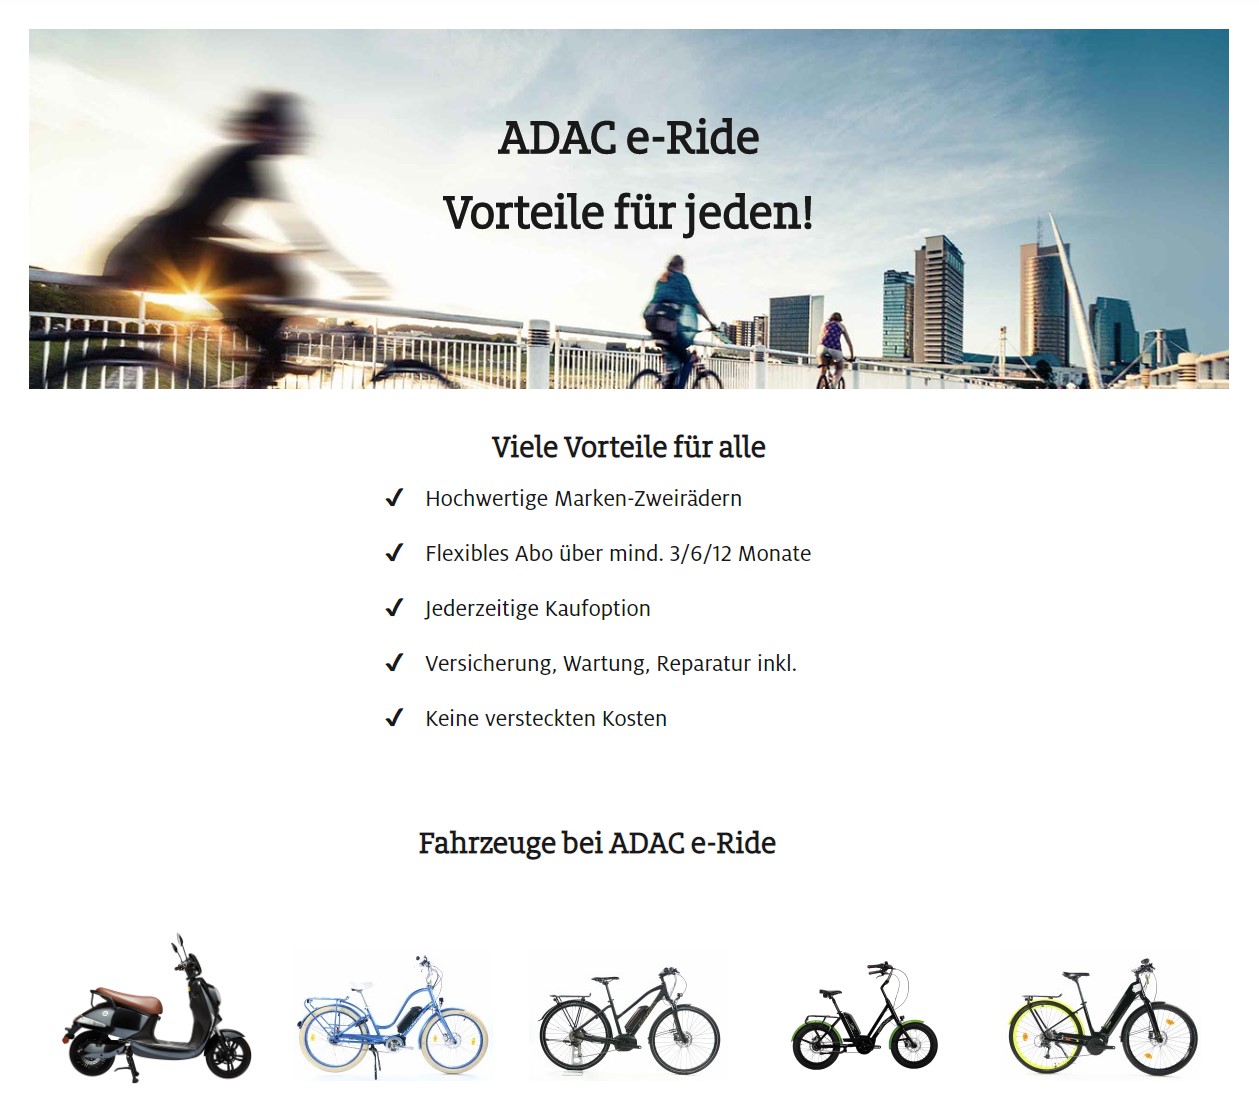 ADAC e-Ride Abo 2020